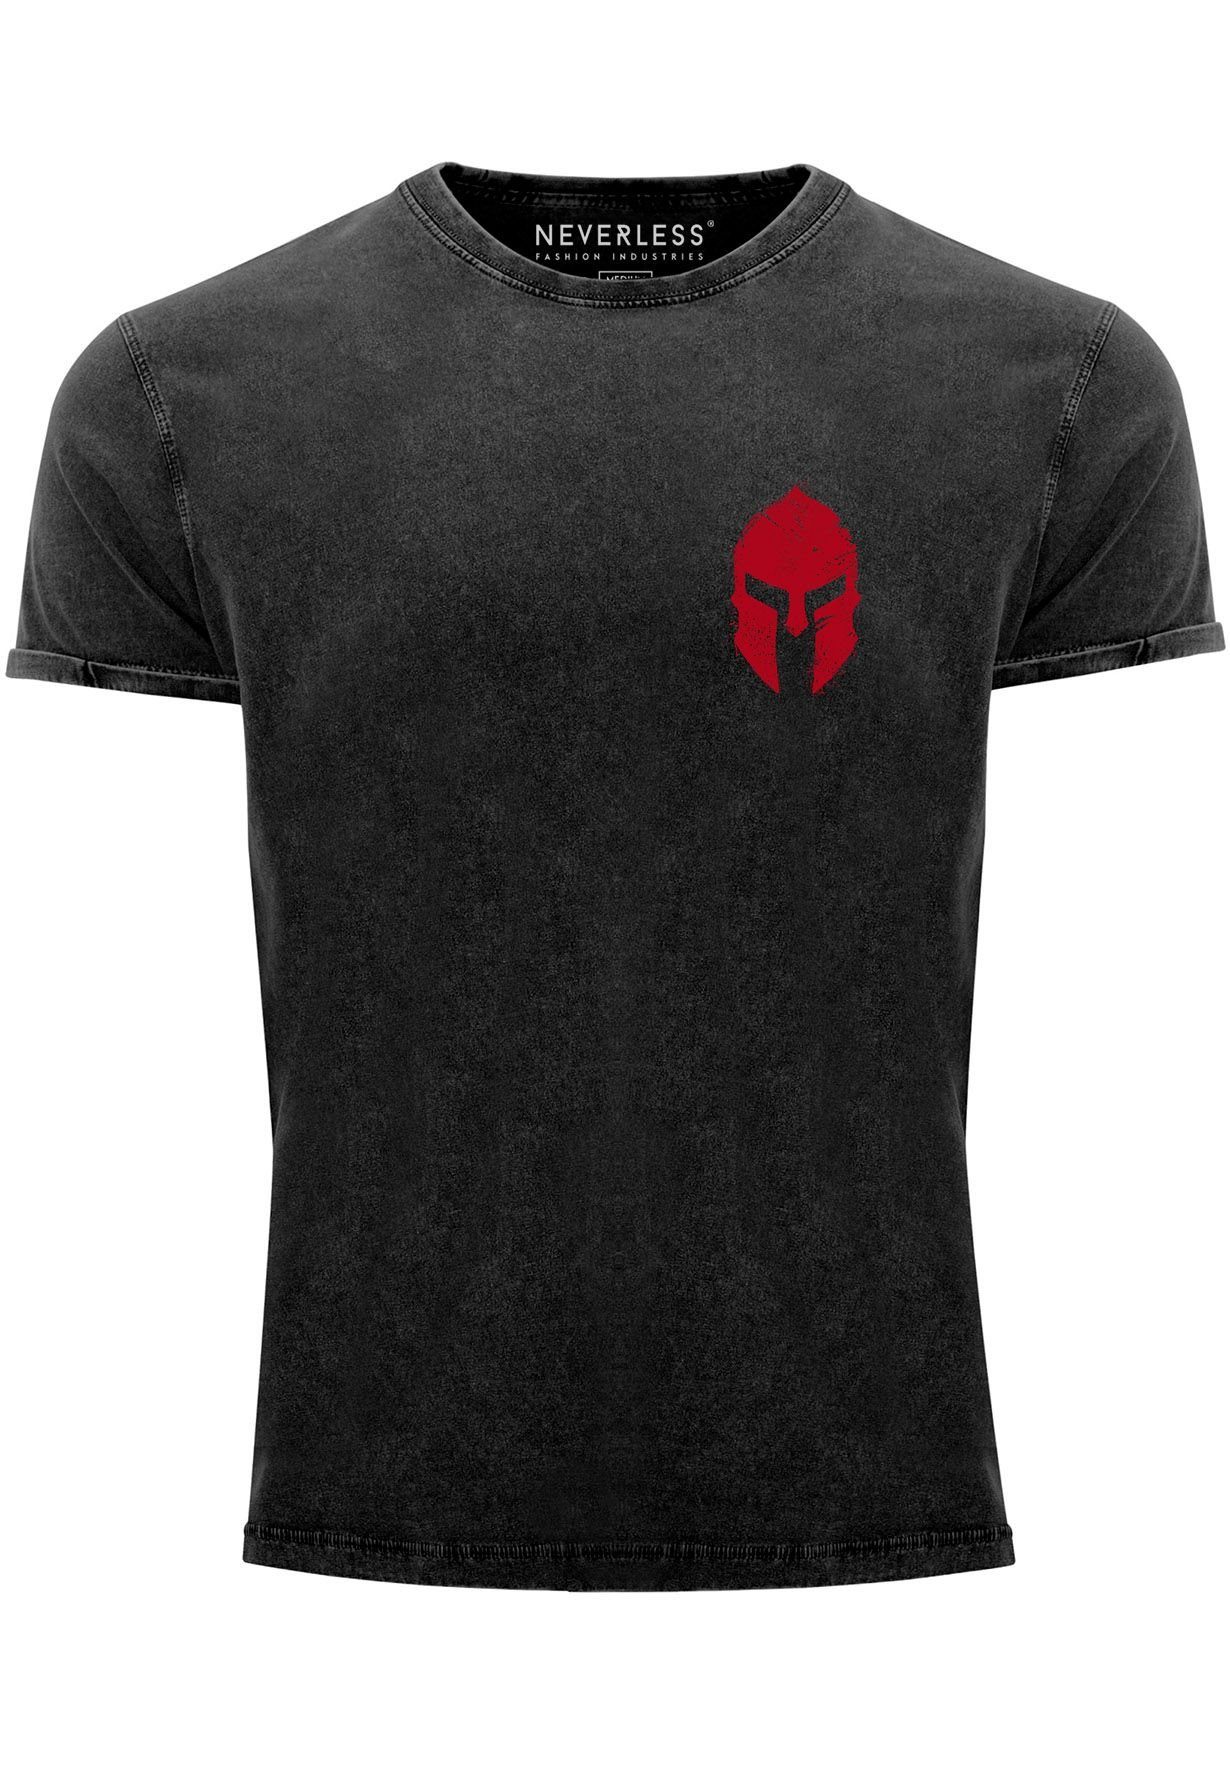 Neverless Print-Shirt Herren Print mit Logo Vintage Gladiator Shirt Spartaner schwarz/rot Print Sparta-Helm Kriege